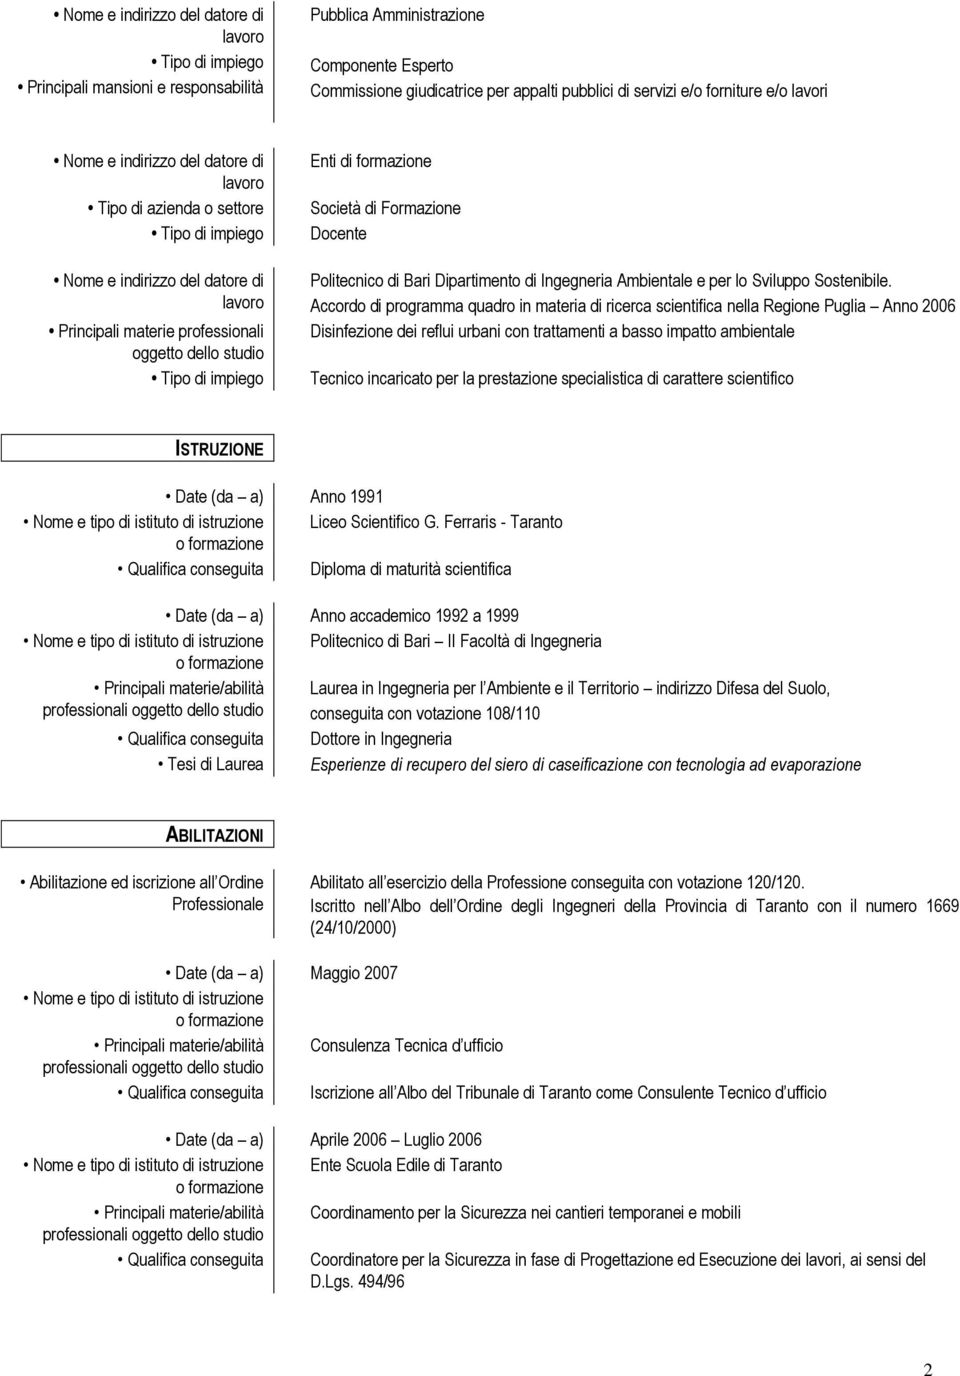 Accordo di programma quadro in materia di ricerca scientifica nella Regione Puglia Anno 2006 Disinfezione dei reflui urbani con trattamenti a basso impatto ambientale Tecnico incaricato per la